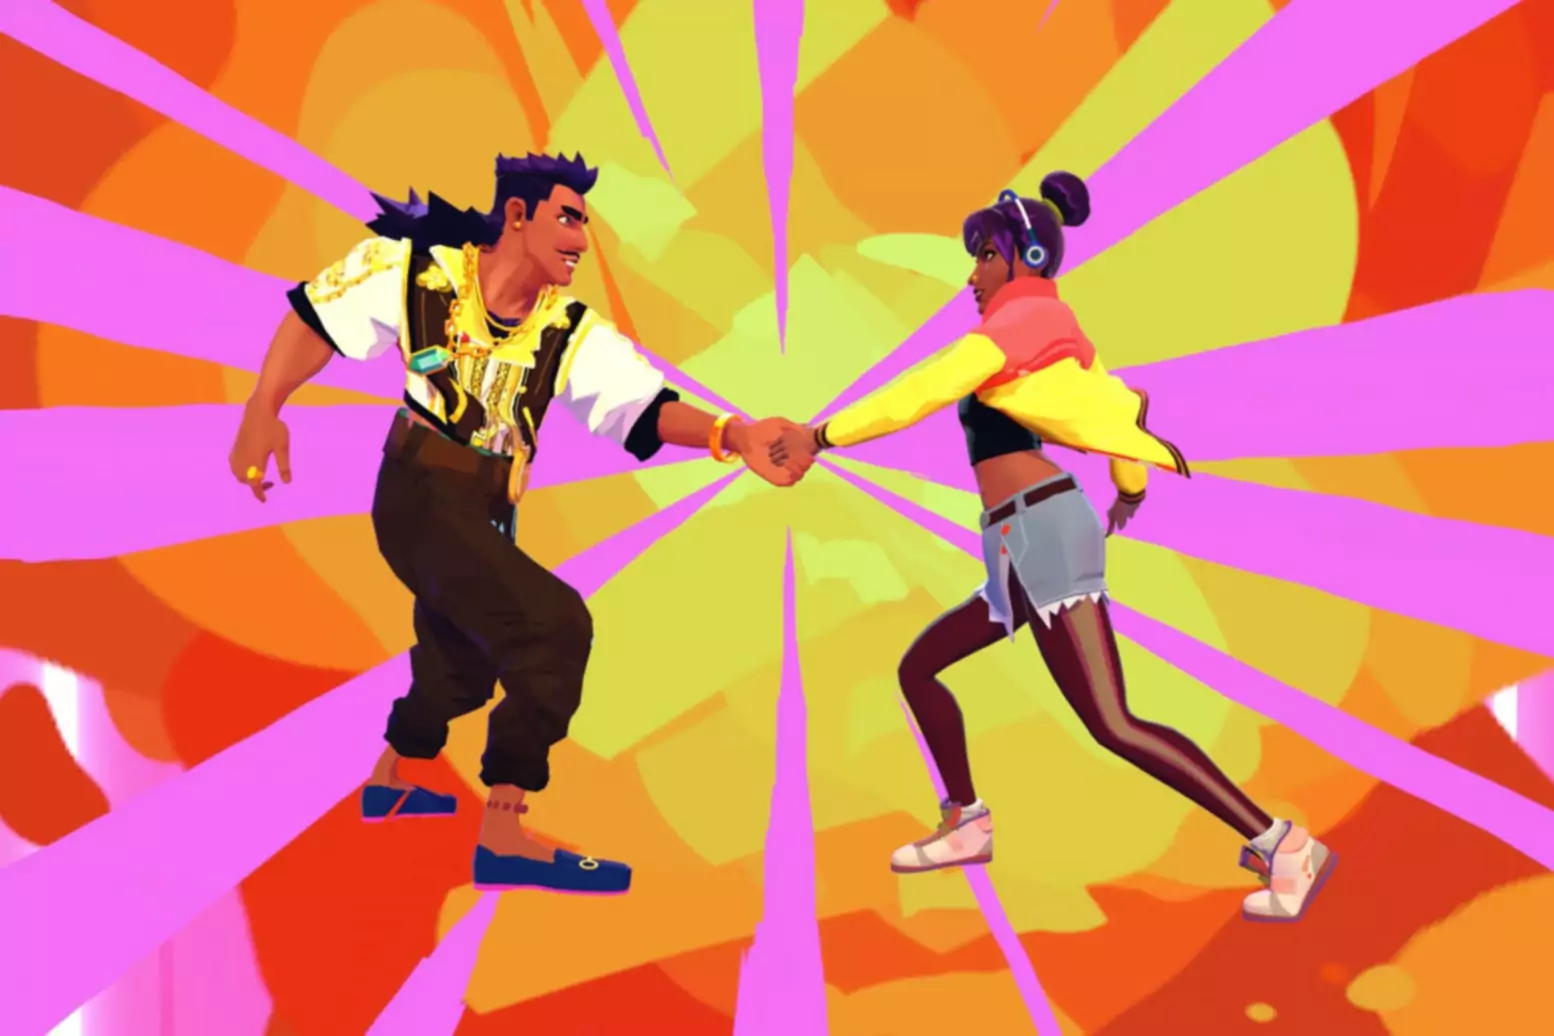 Spēles Thirsty Suitors ekrānšāviņš, kurā uz spilgti krāsaina fona redzami divi varoņi, kas krata rokas.